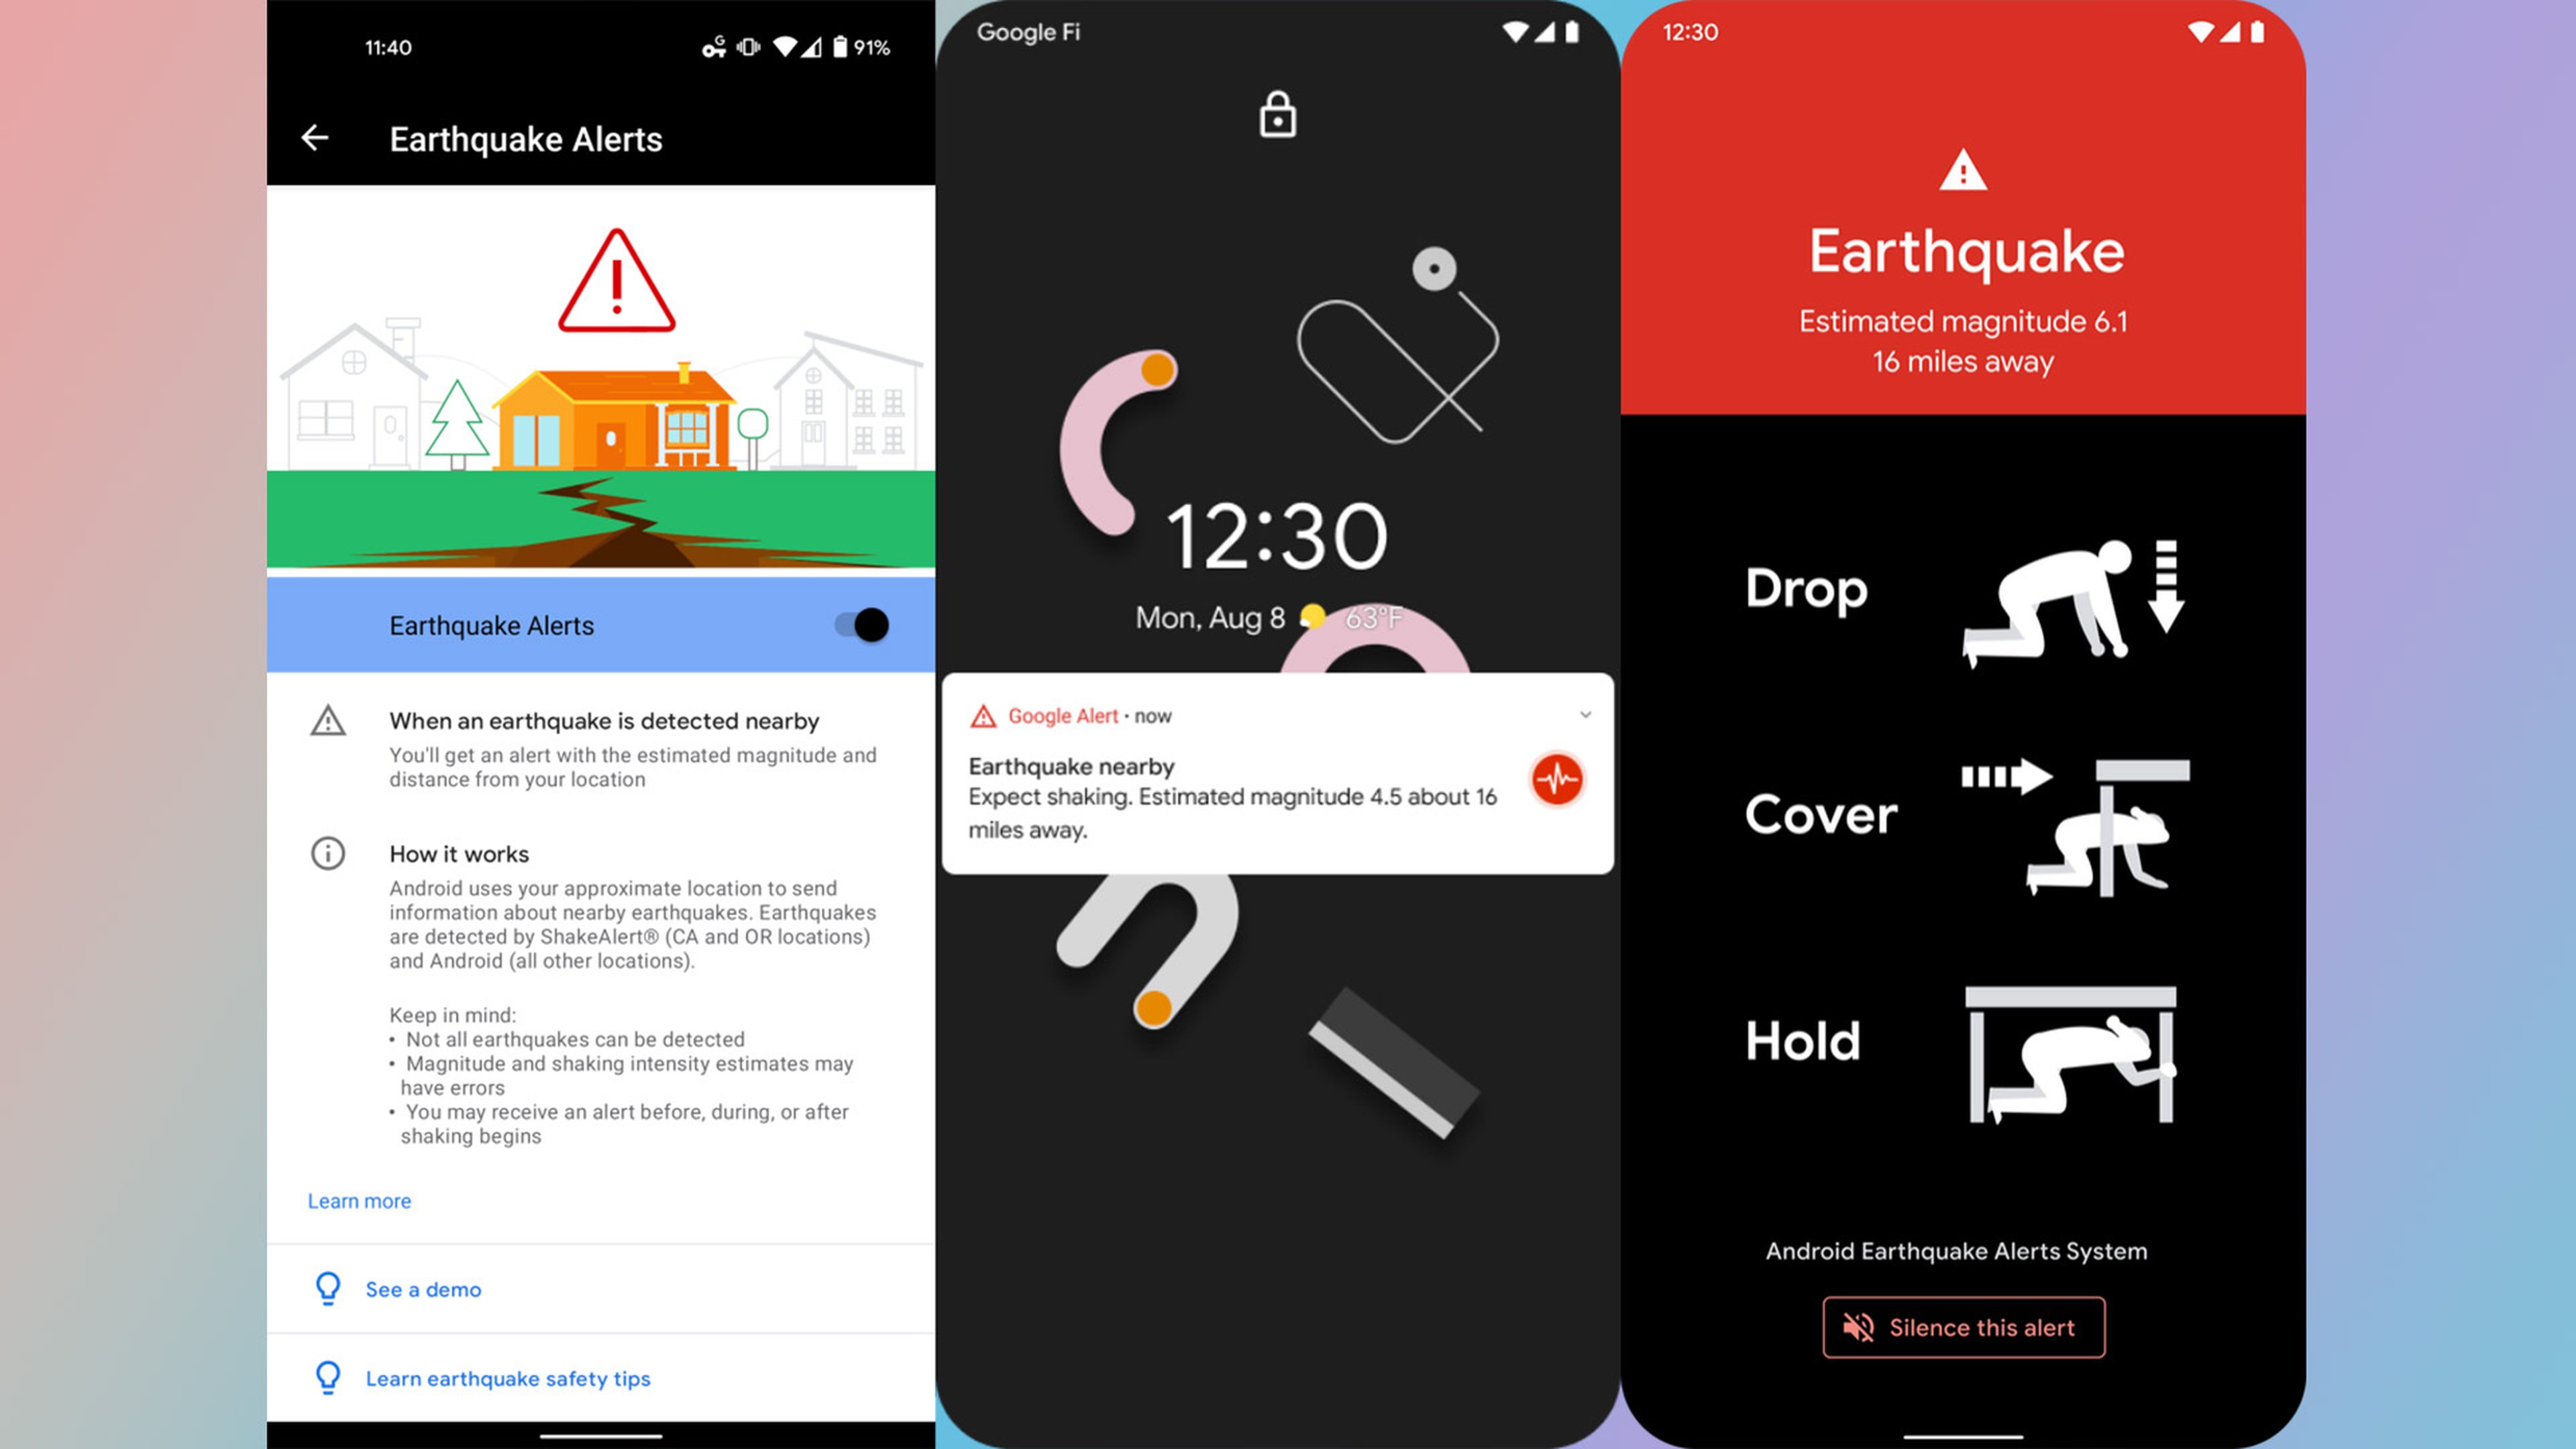 Google transforma tu móvil Android en un sismógrafo colaborativo, ya funciona en Grecia y Nueva Zelanda